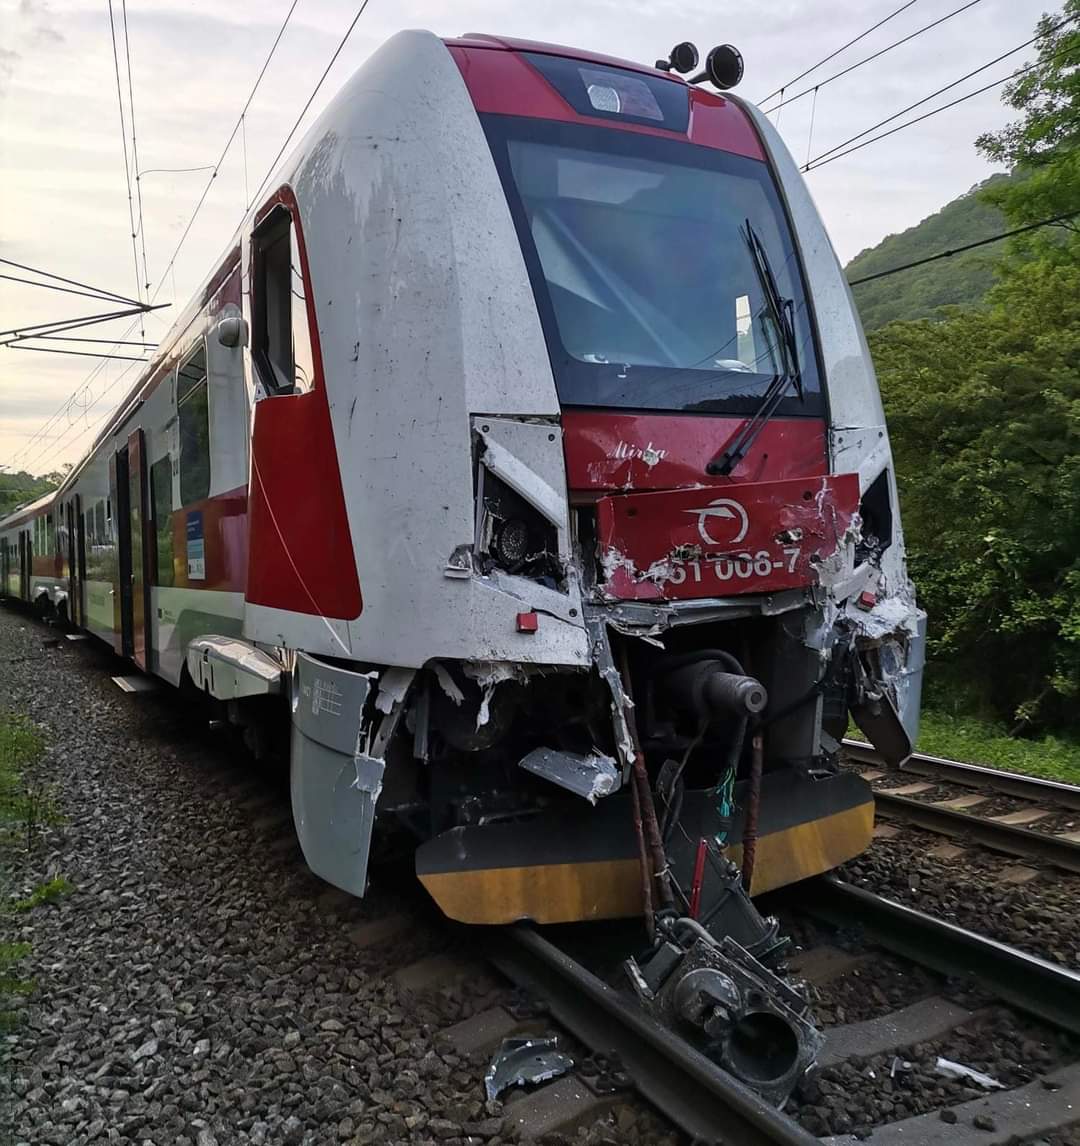 Zrazili sa dva vlaky pri Vrútkach, Strečnu sa vyhnite (FOTO)